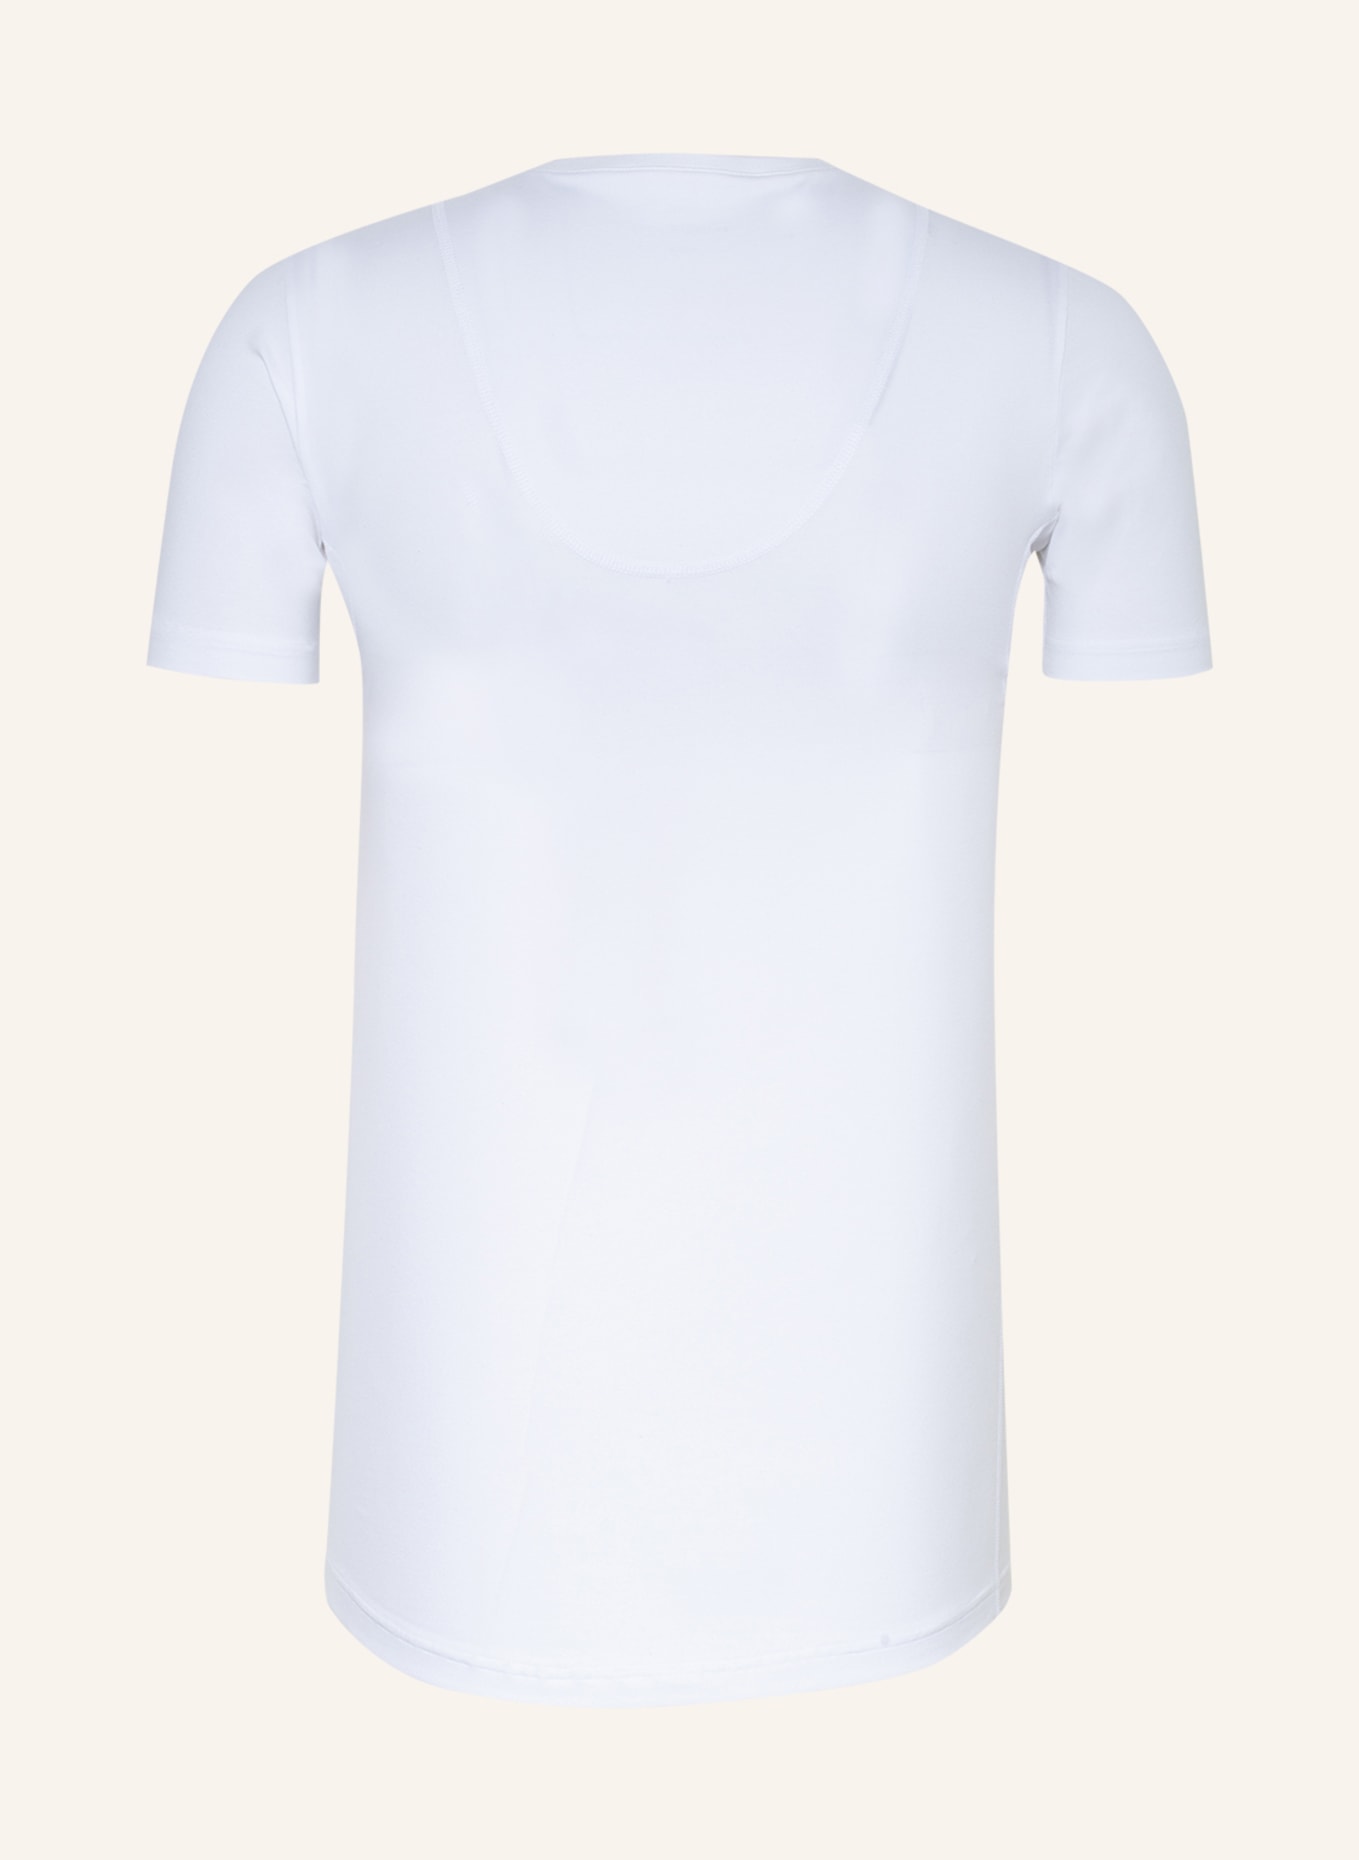 mey V-shirt series BUSINESS CLASS, Color: WHITE (Image 2)